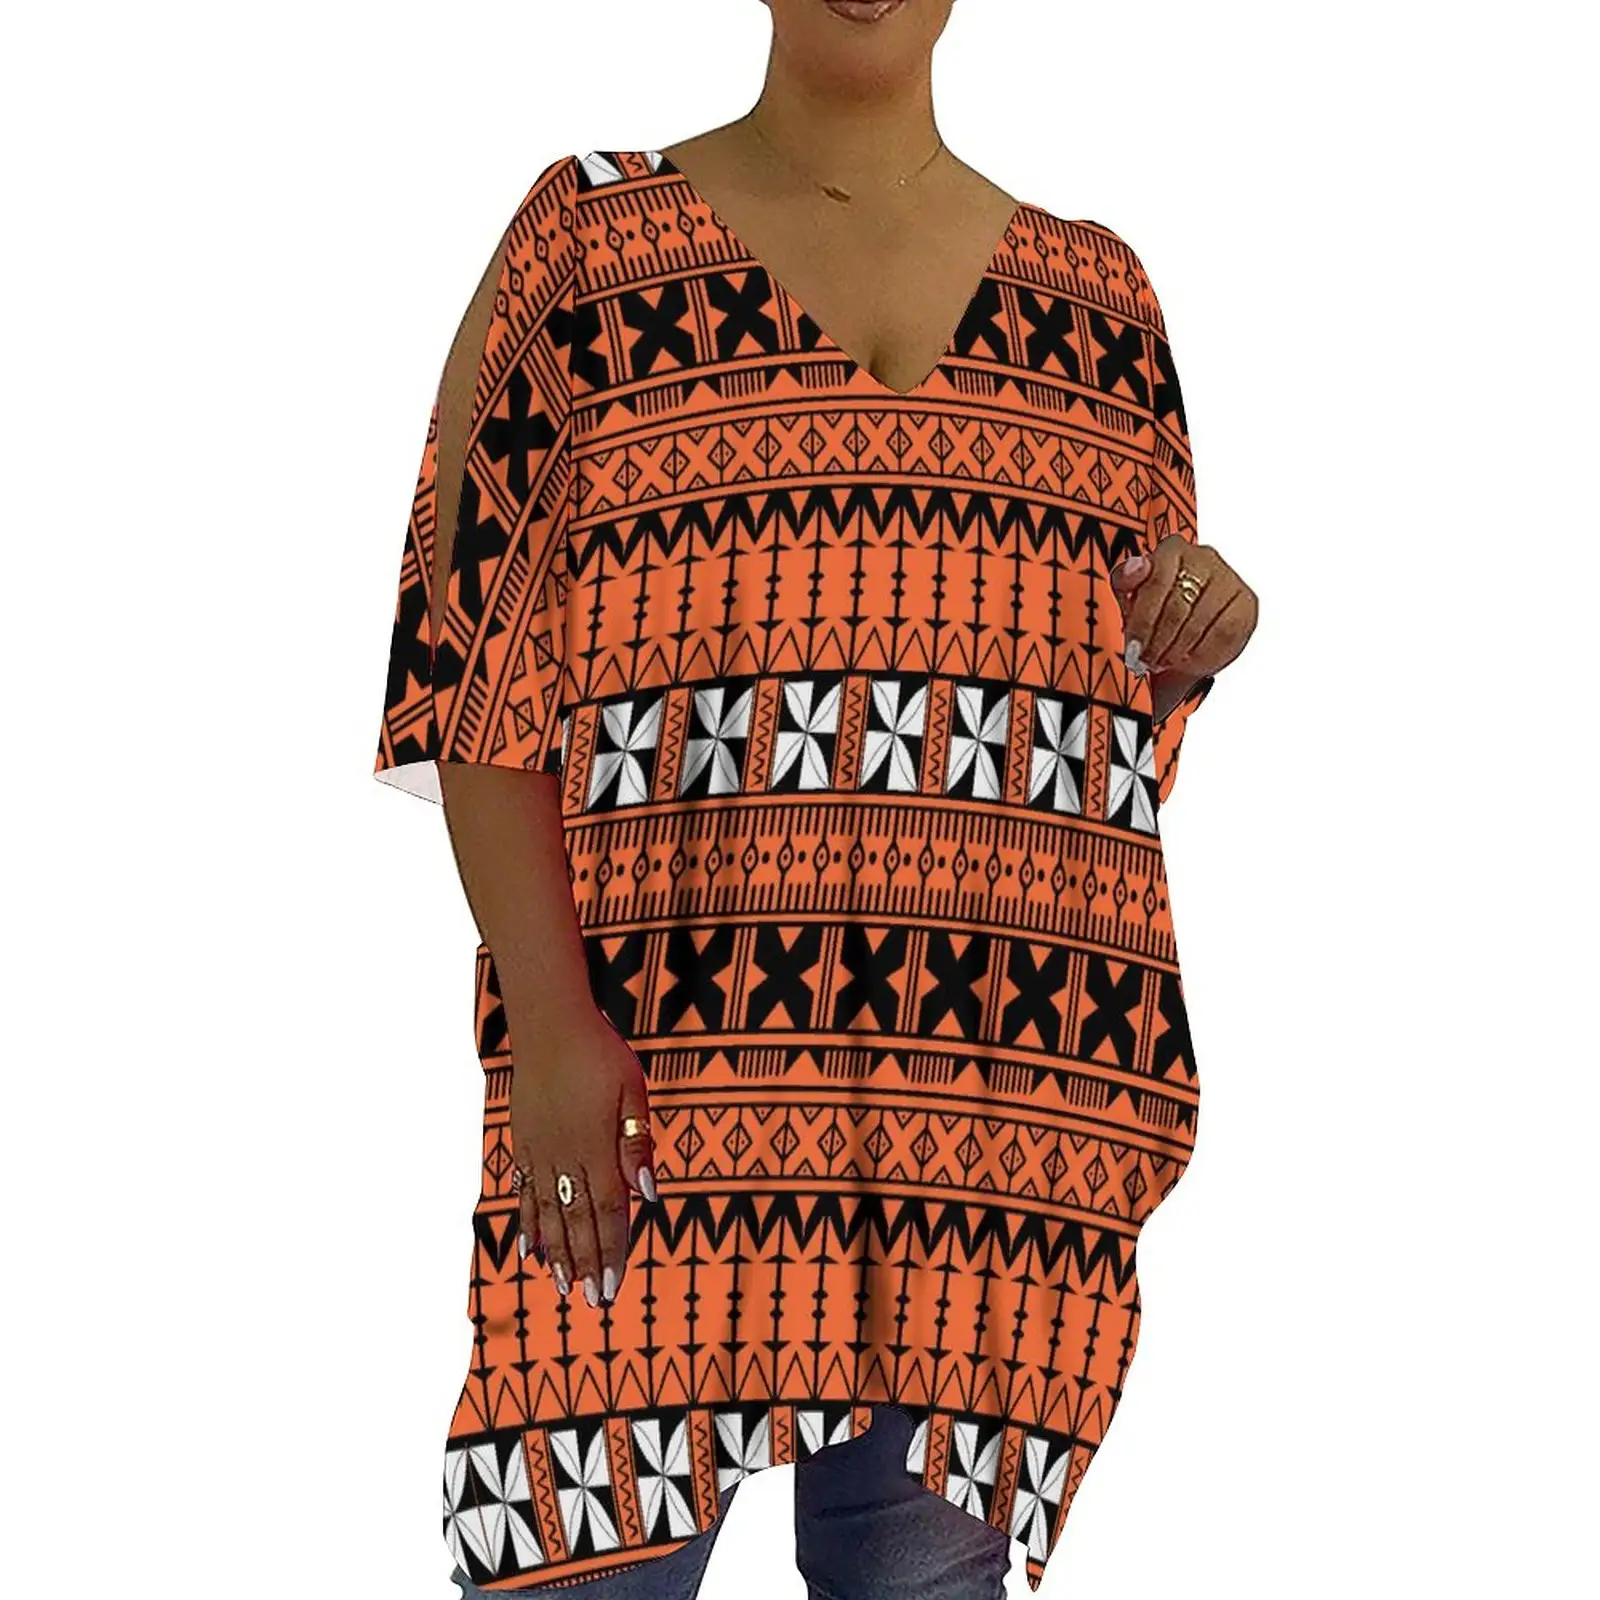 Venda quente Polinésia Tonga Tribal Ombro Frio Mini Vestido Curto Das Senhoras T-Shirt Tops Meia Manga Oversized T Shirts Para As Mulheres